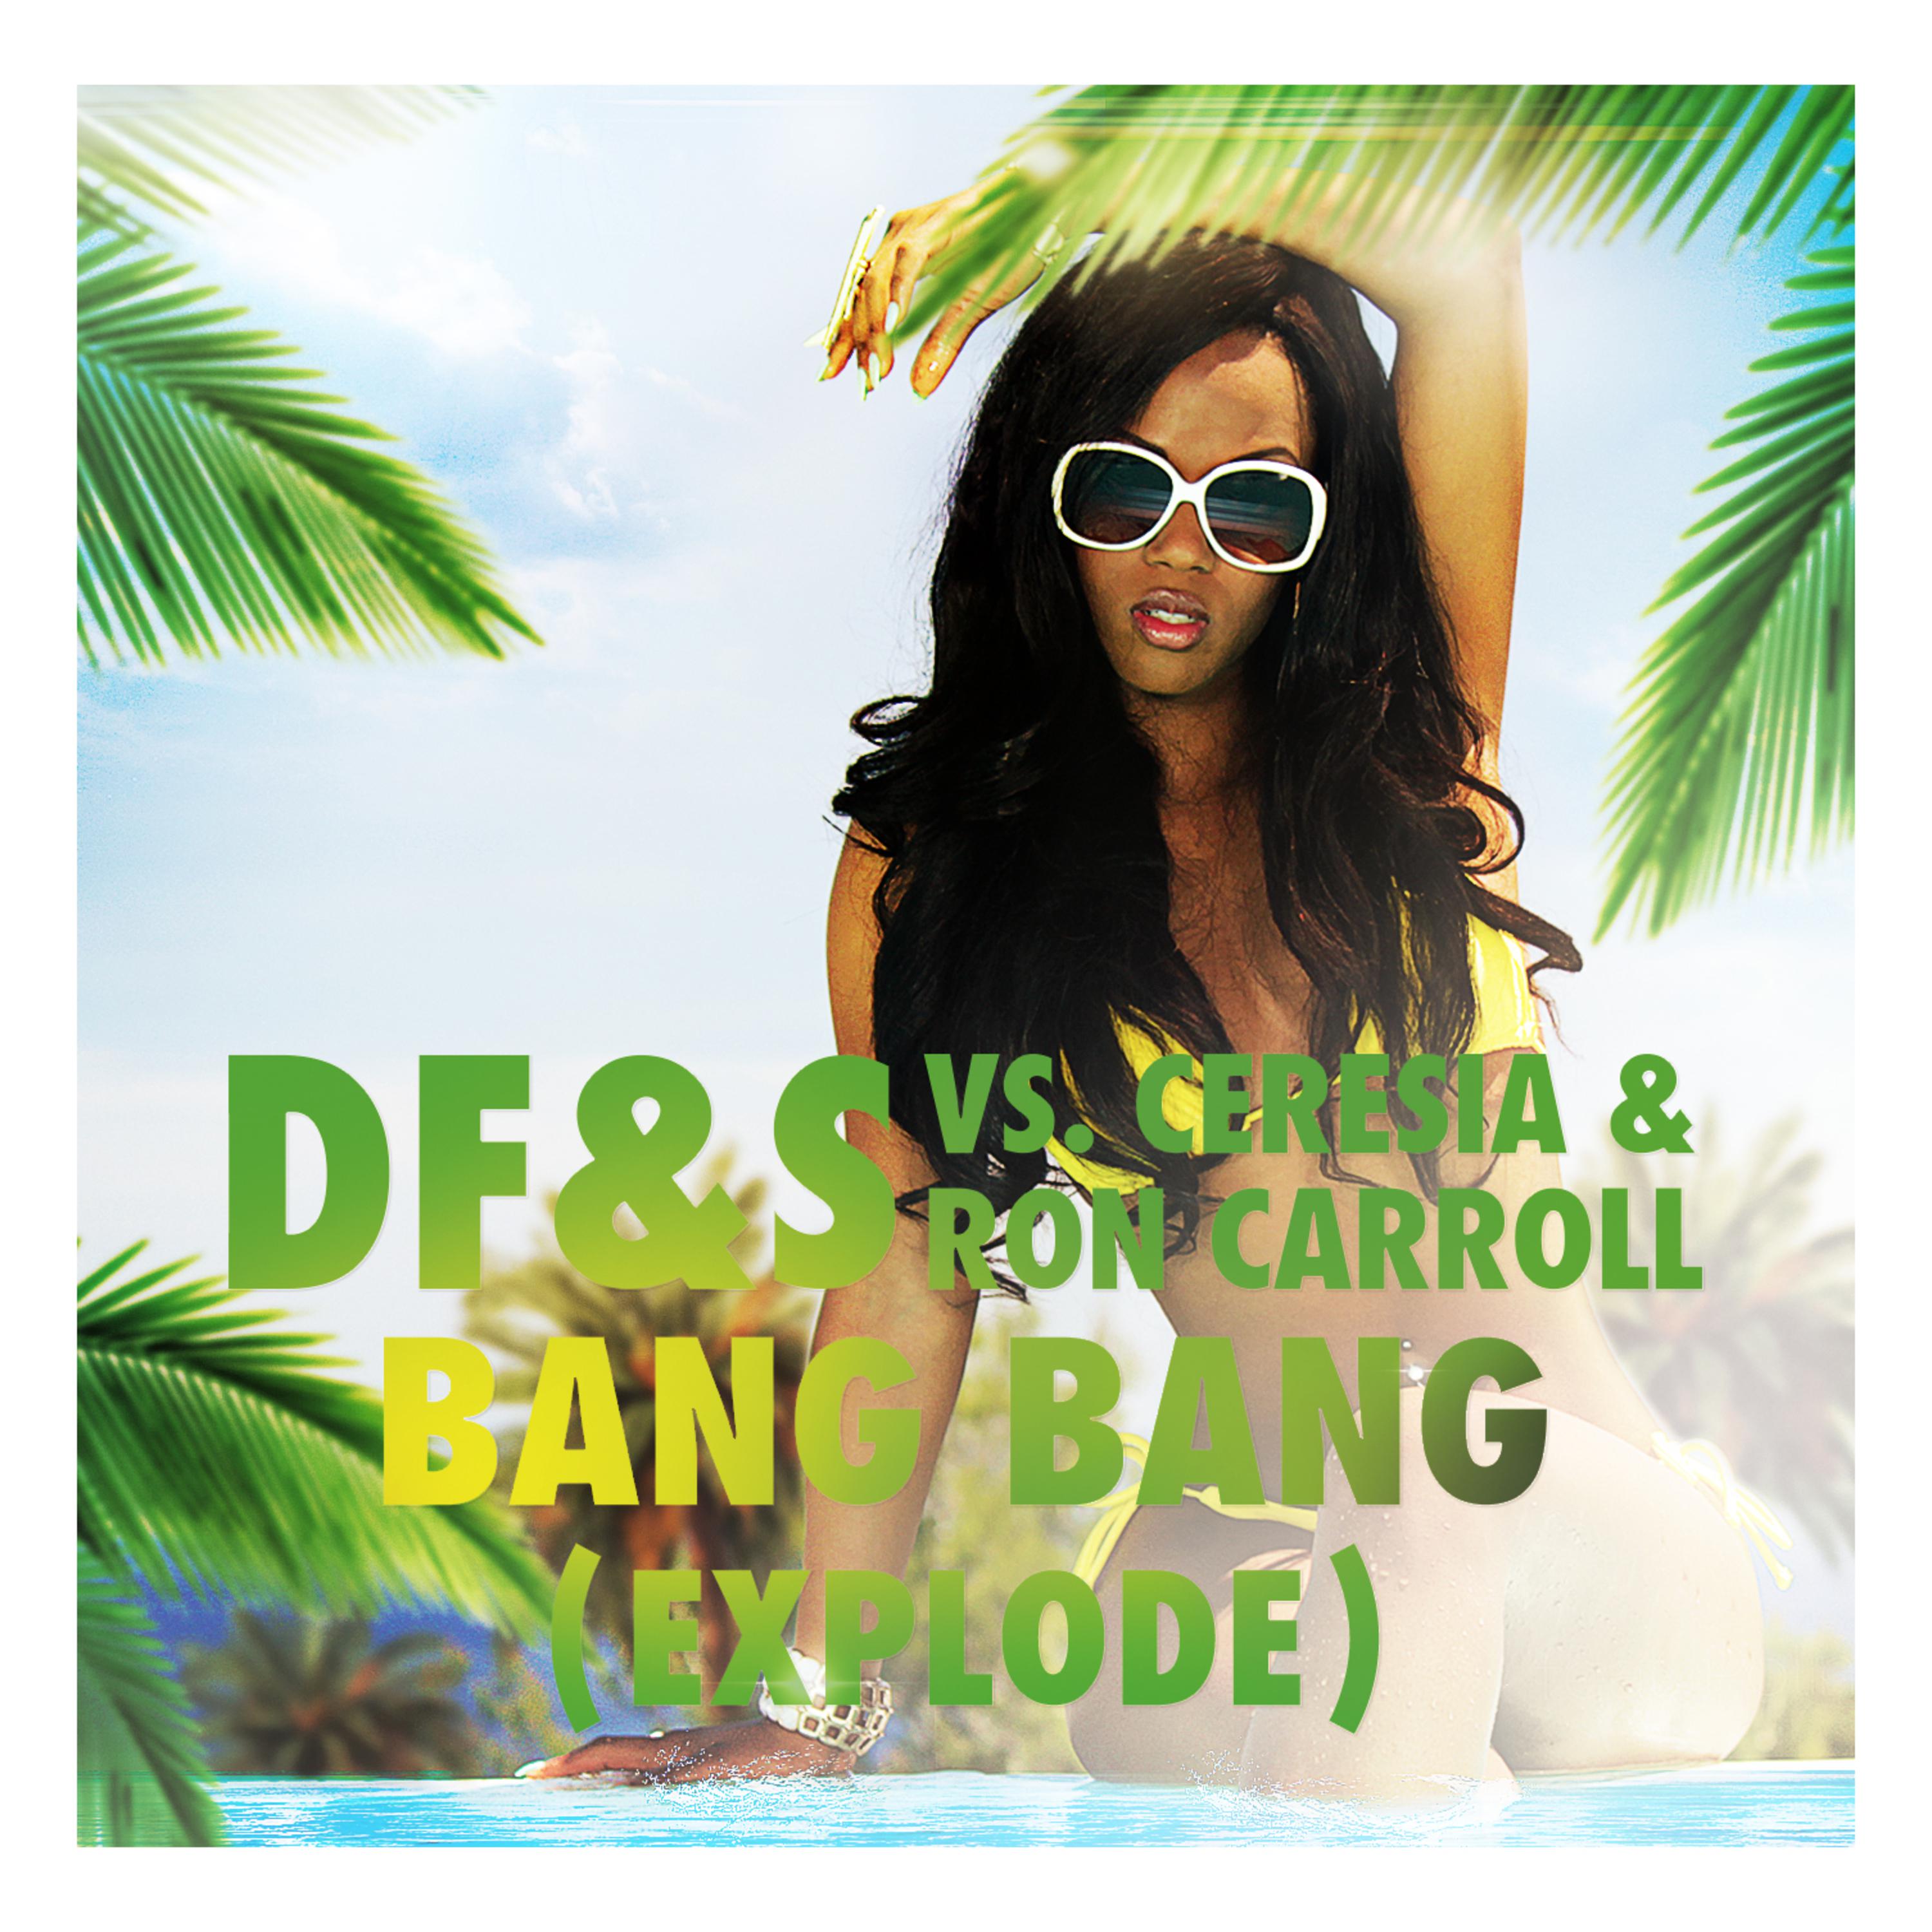 Bang Bang (Explode) (CJ Stone Dub Mix)